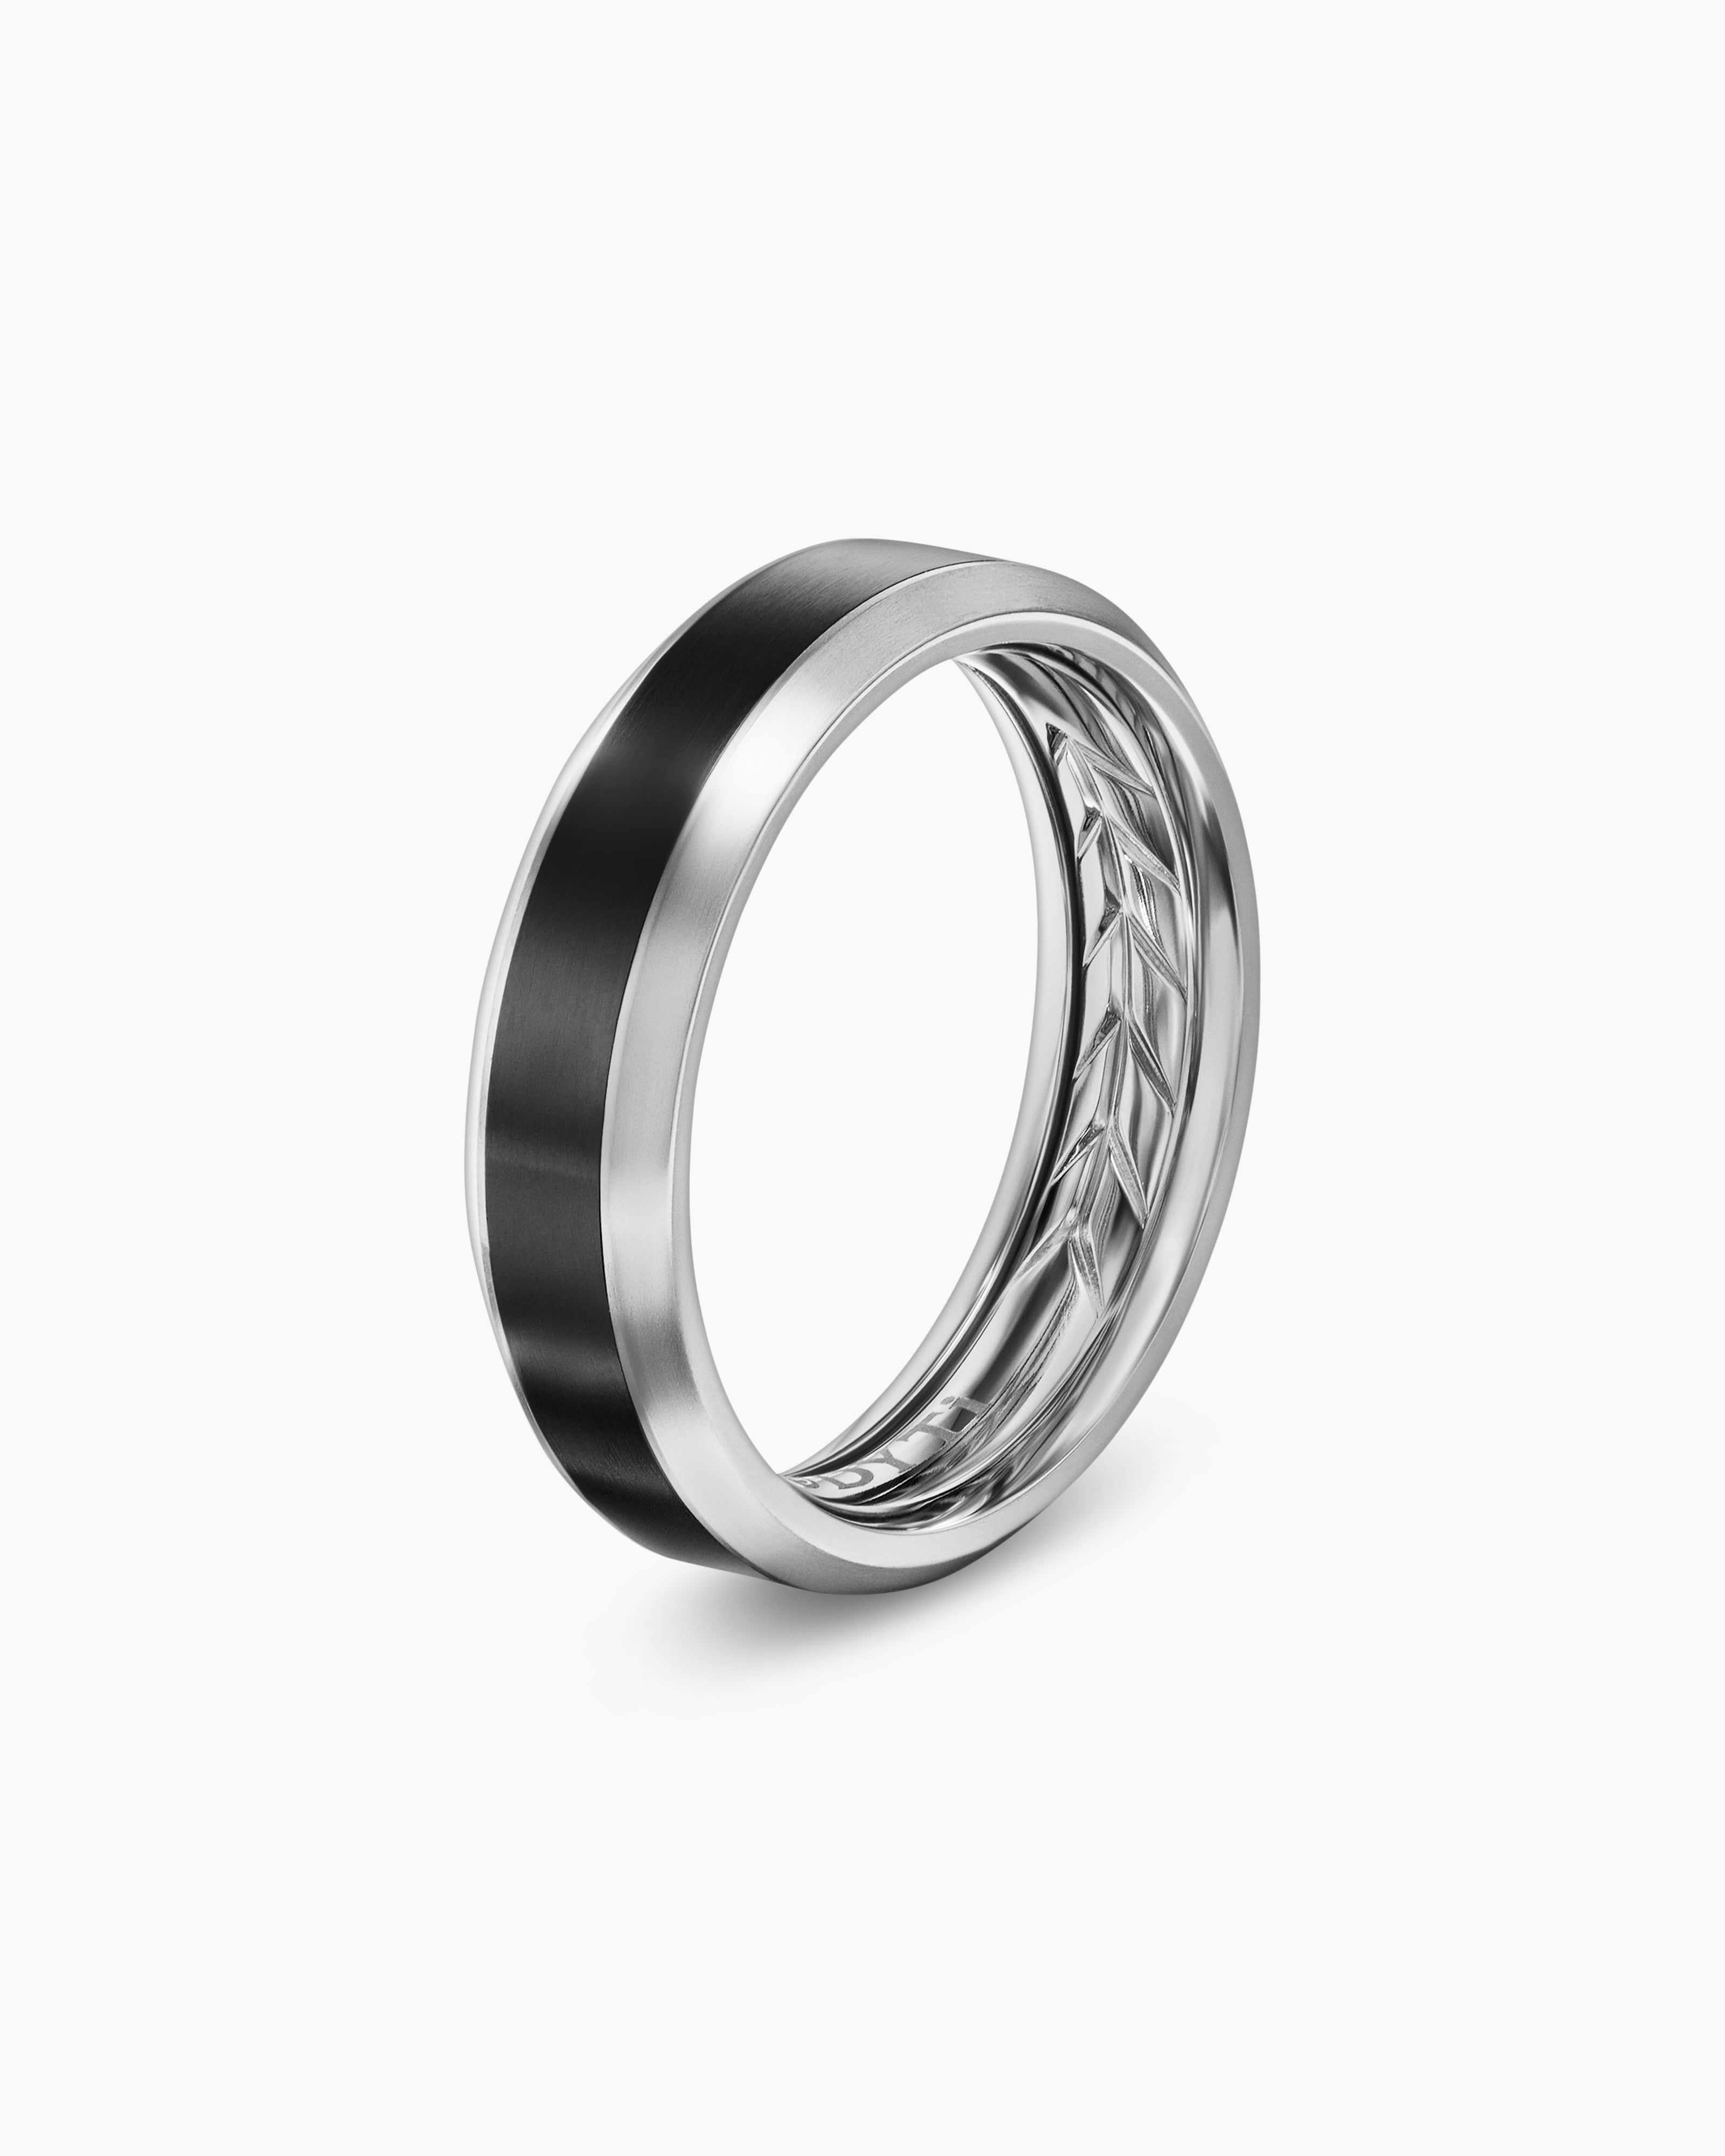 Mens Beveled Band Ring in Grey Titanium with Black Titanium, 6mm